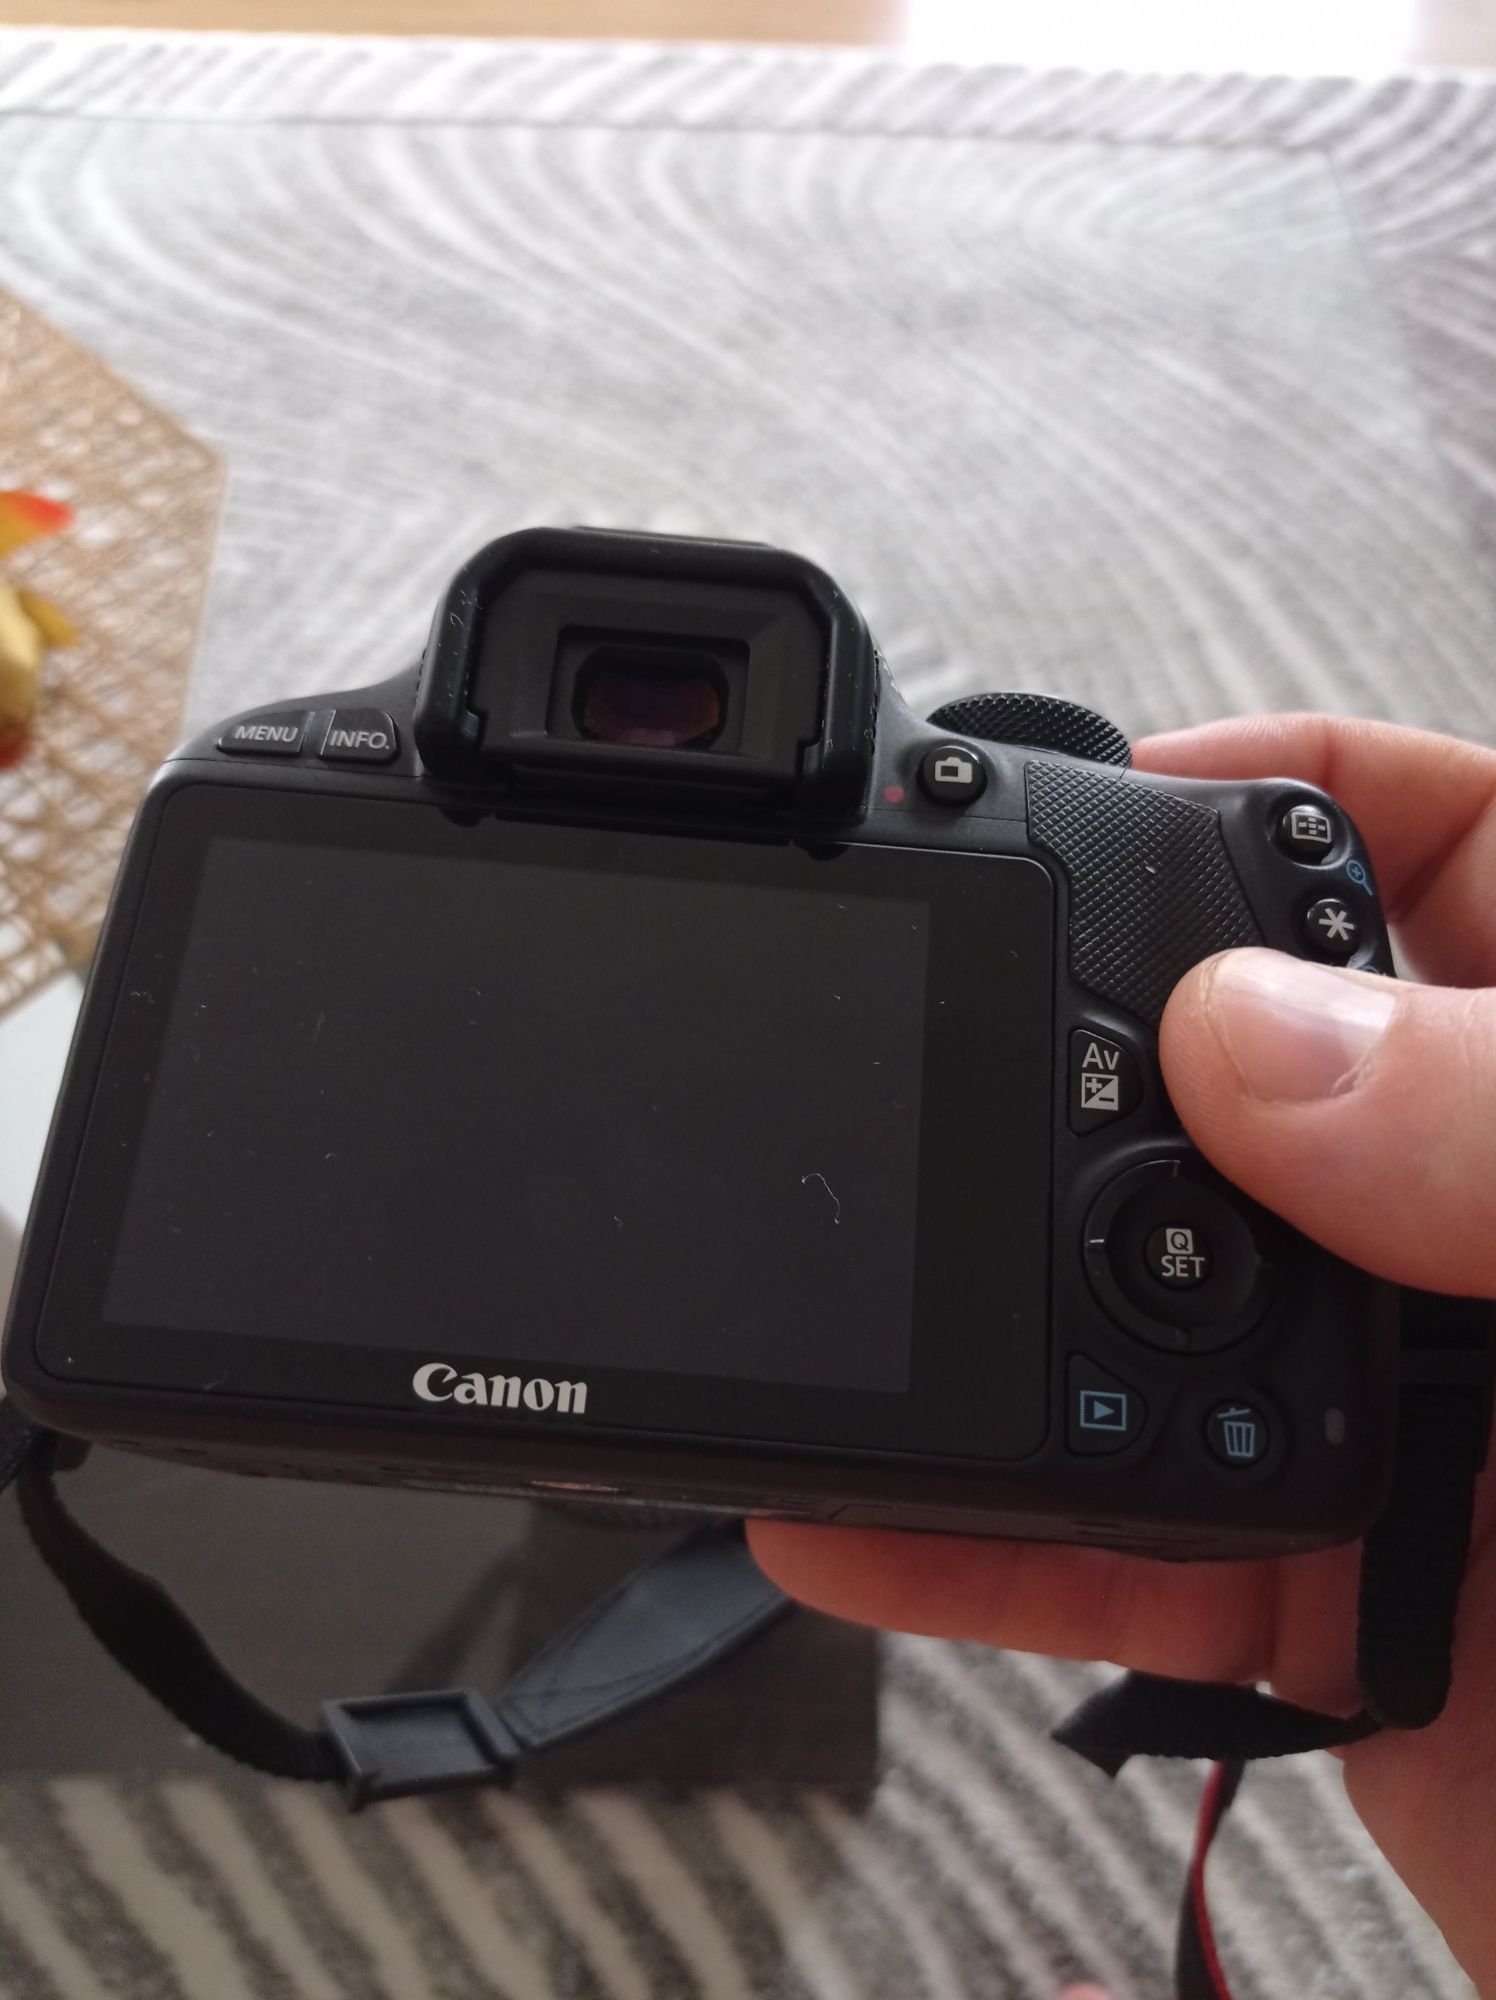 Canon EOS 100D przebieg około 4tys zdjęć